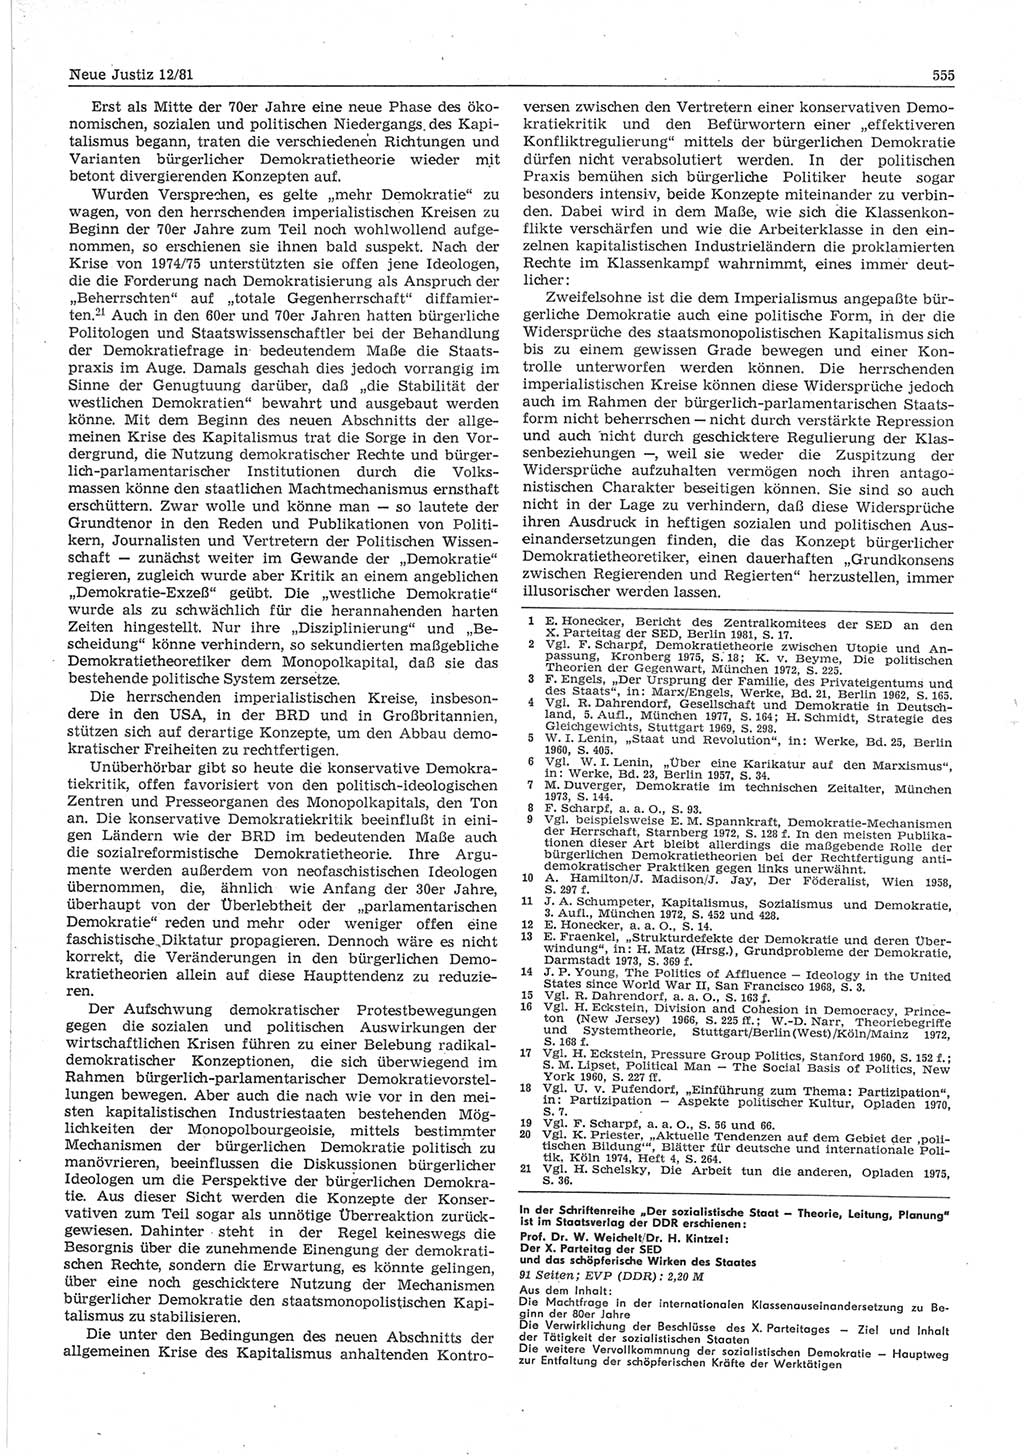 Neue Justiz (NJ), Zeitschrift für sozialistisches Recht und Gesetzlichkeit [Deutsche Demokratische Republik (DDR)], 35. Jahrgang 1981, Seite 555 (NJ DDR 1981, S. 555)